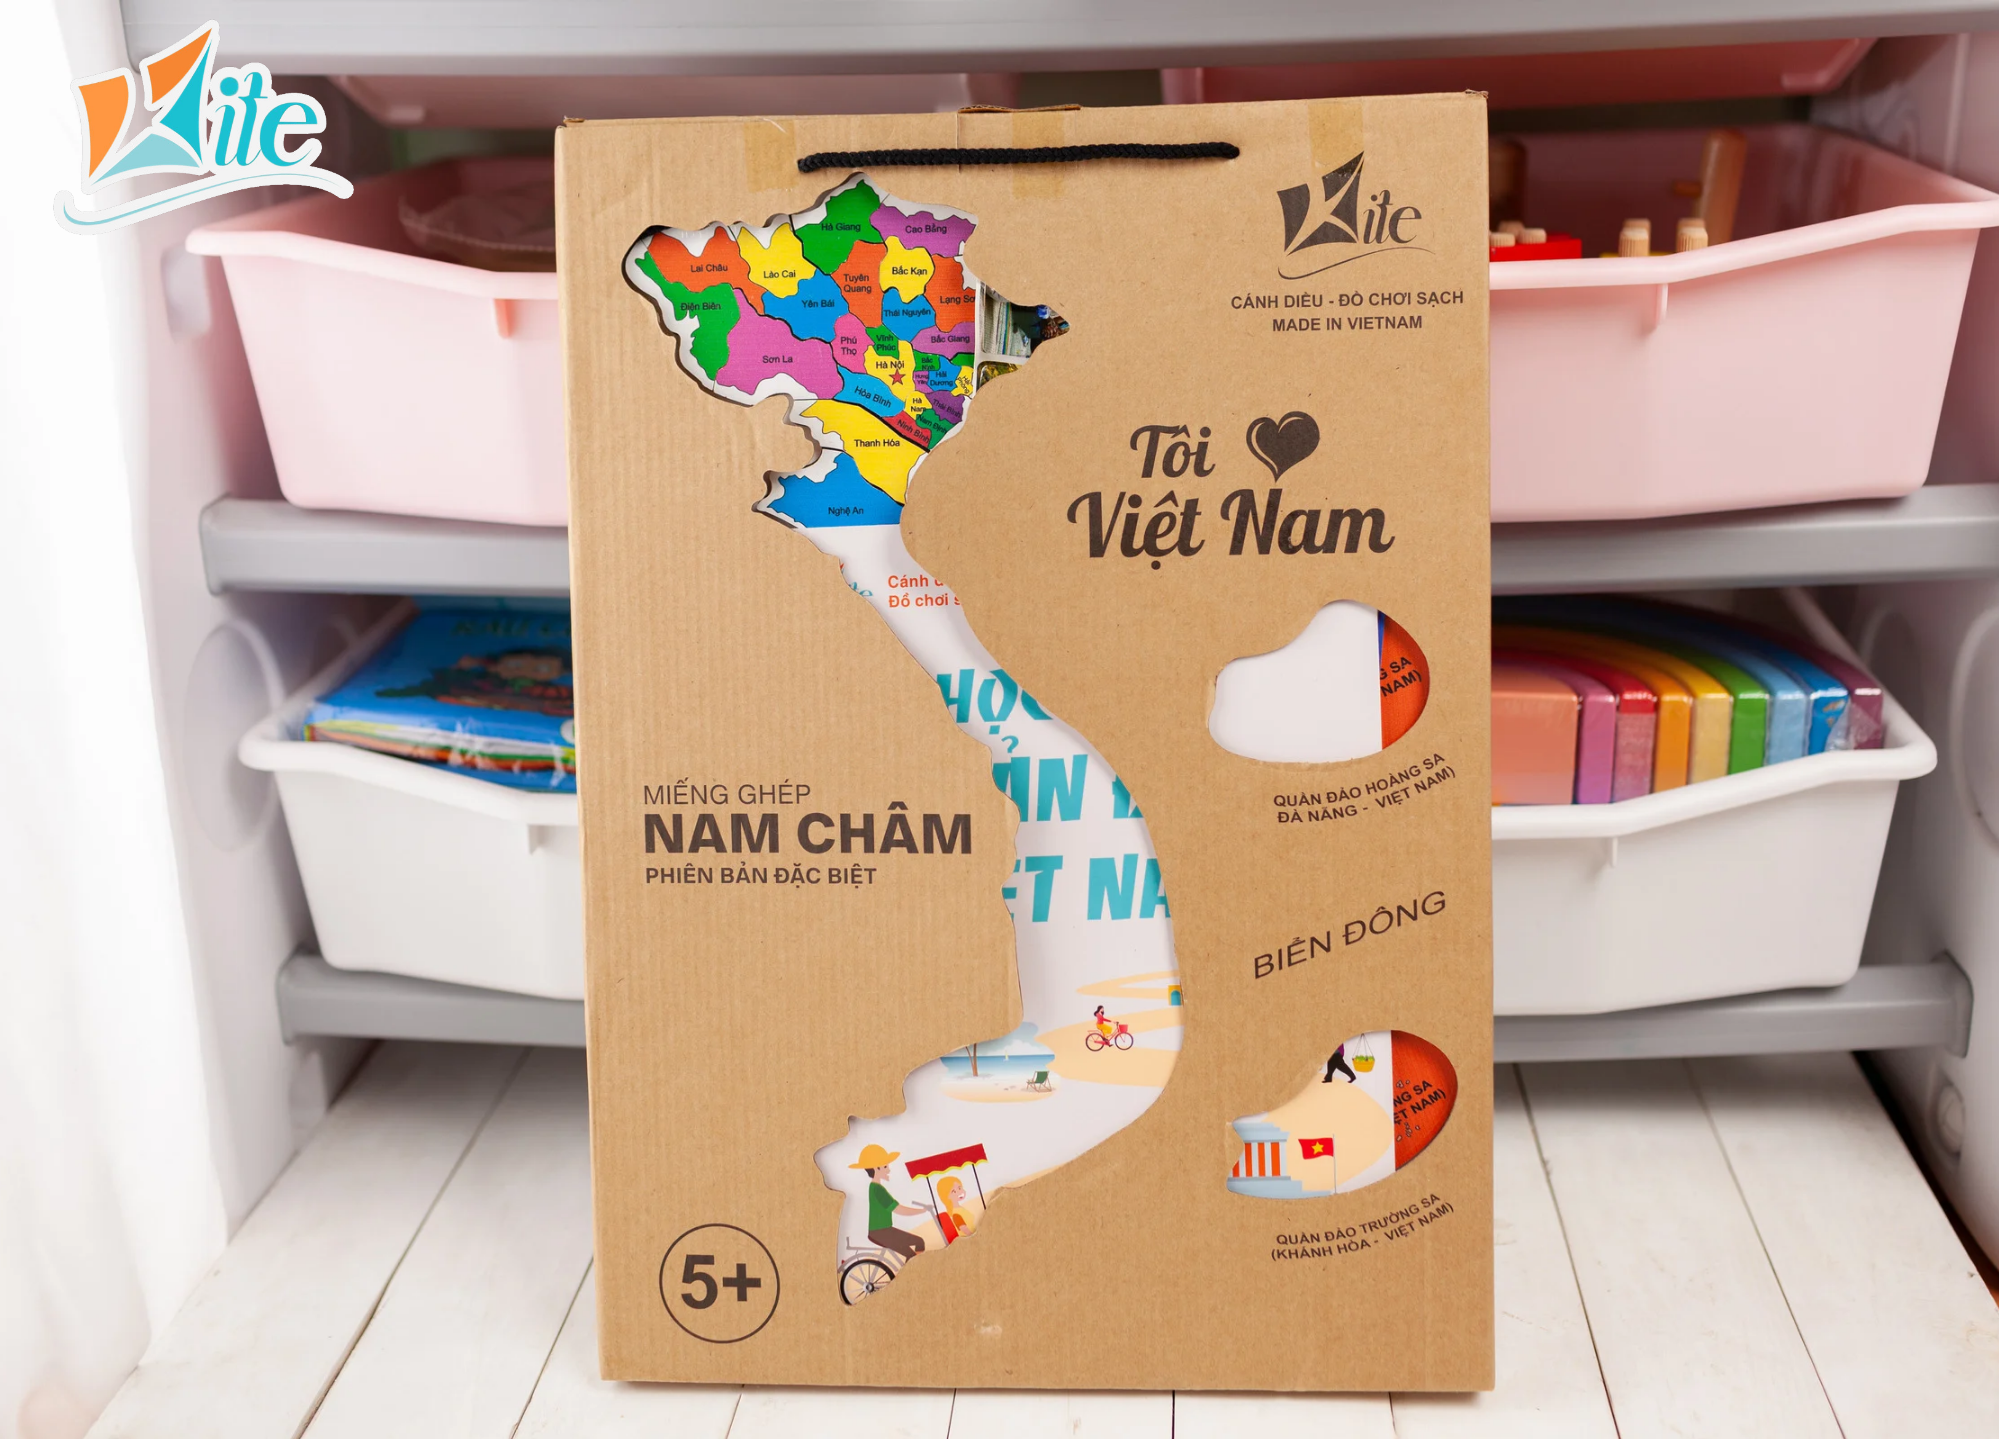 Bộ lắp ghép nam châm Bản Đồ Việt Nam – Học liệu, decor trang trí - Metis đồ chơi cho con